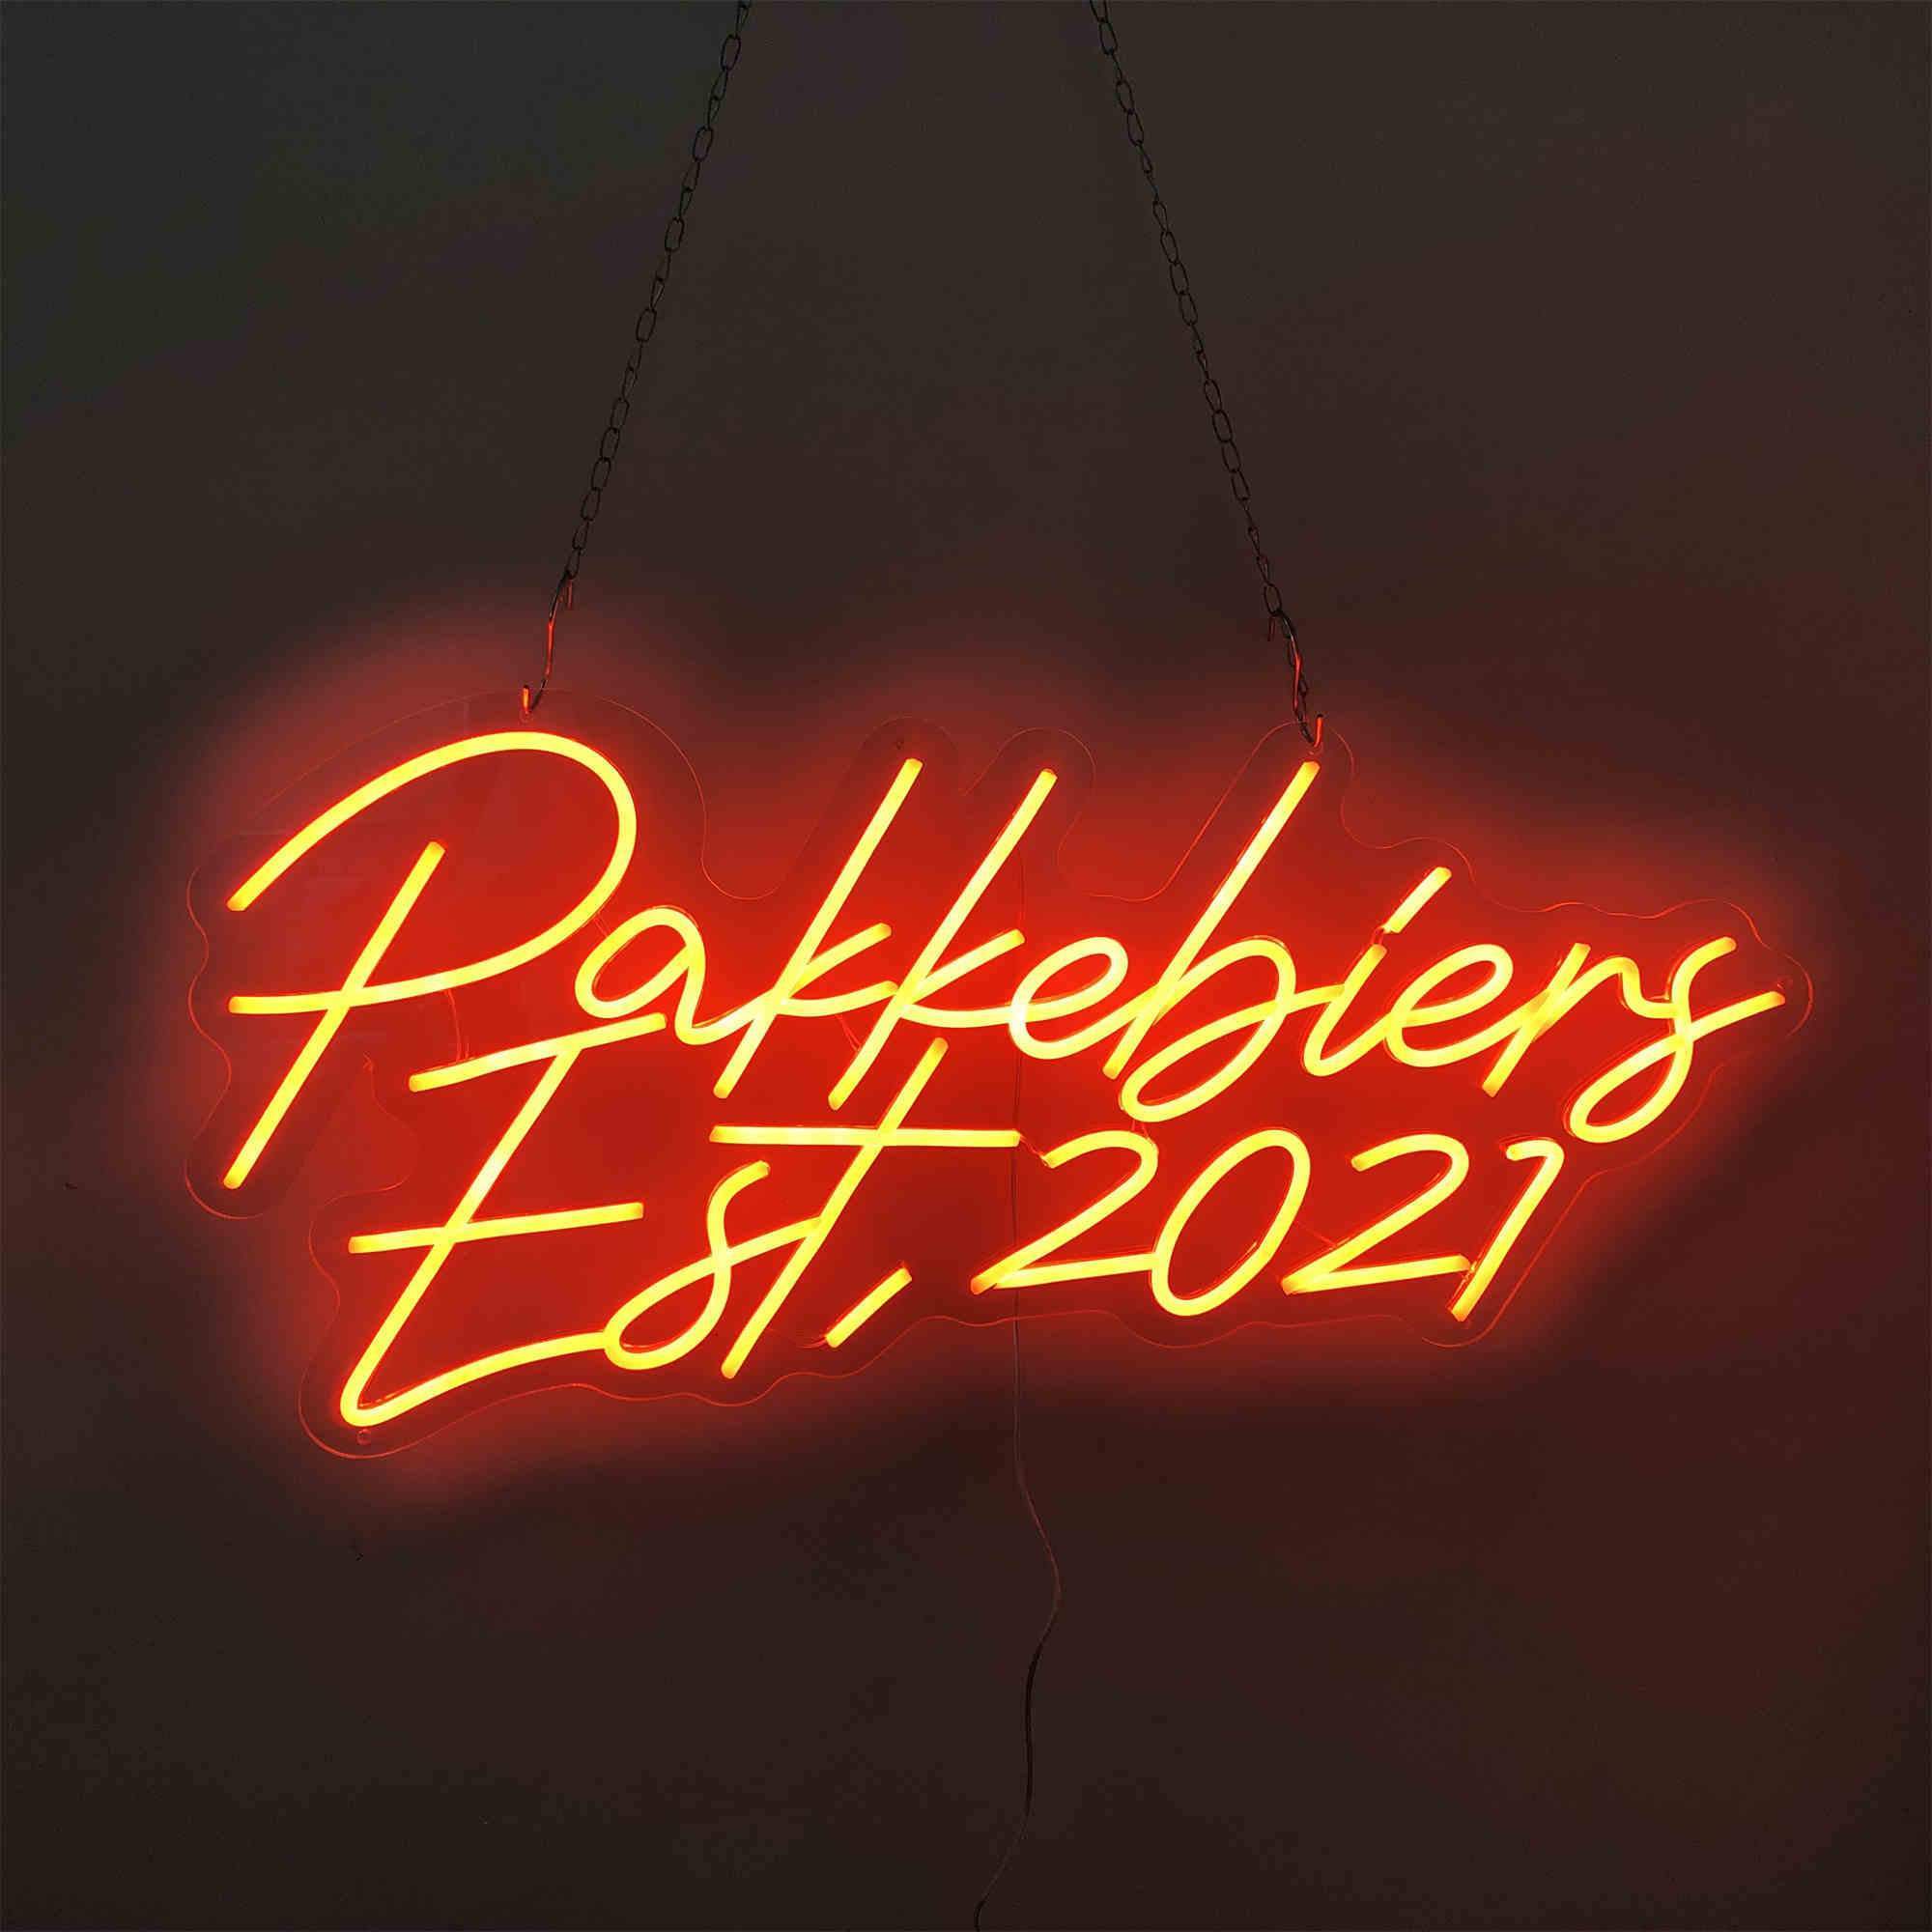 Parkbiere ETY 2021 Neon Sign Lights